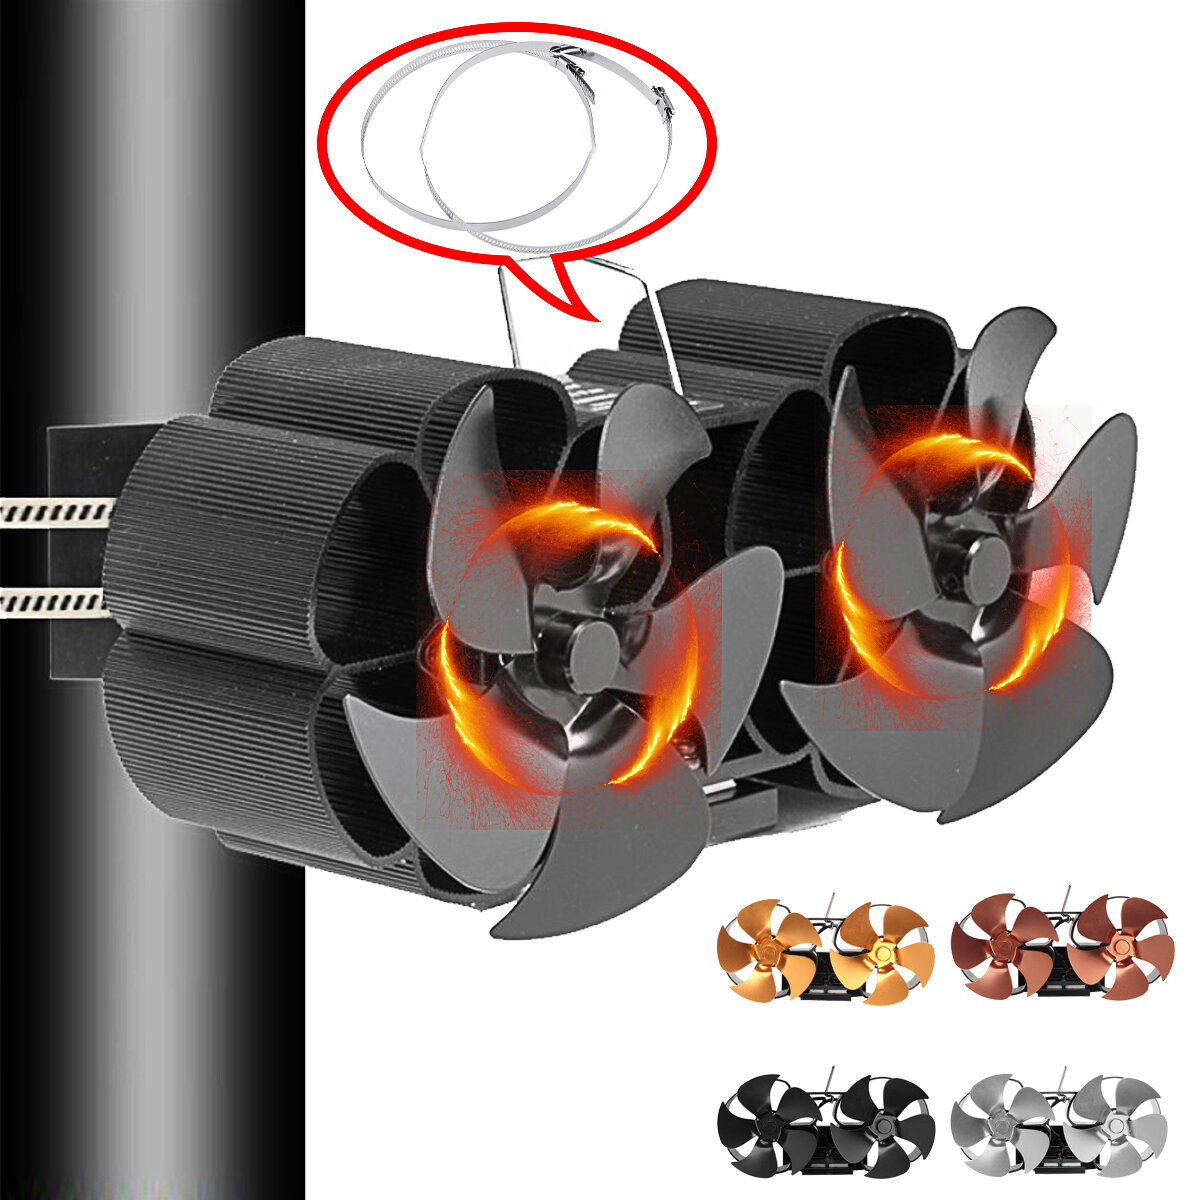 0-лопатковый вентилятор для камина, работающий от тепла камина, бесшумный, эффективный, распределяет тепло по дому.